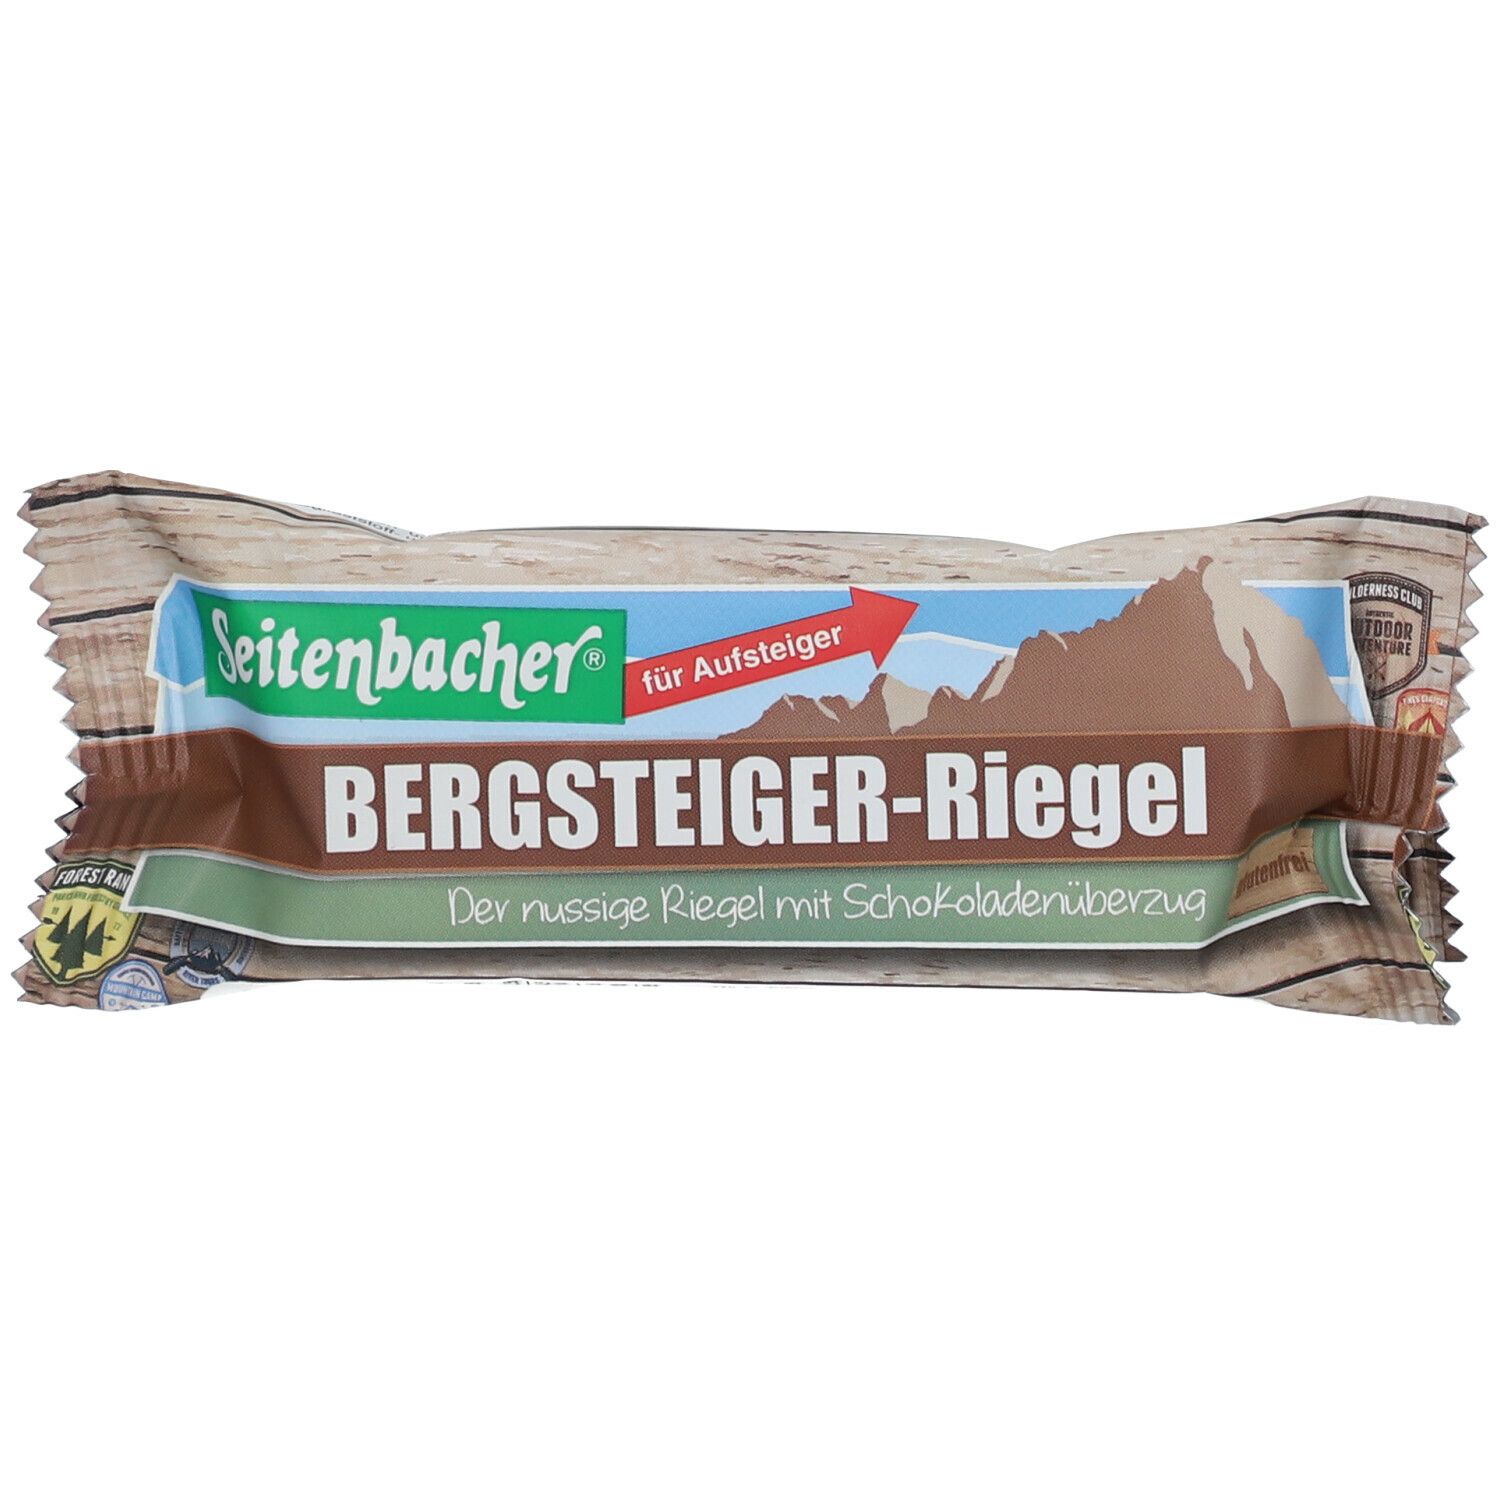 Seitenbacher® Bergsteiger-Riegel